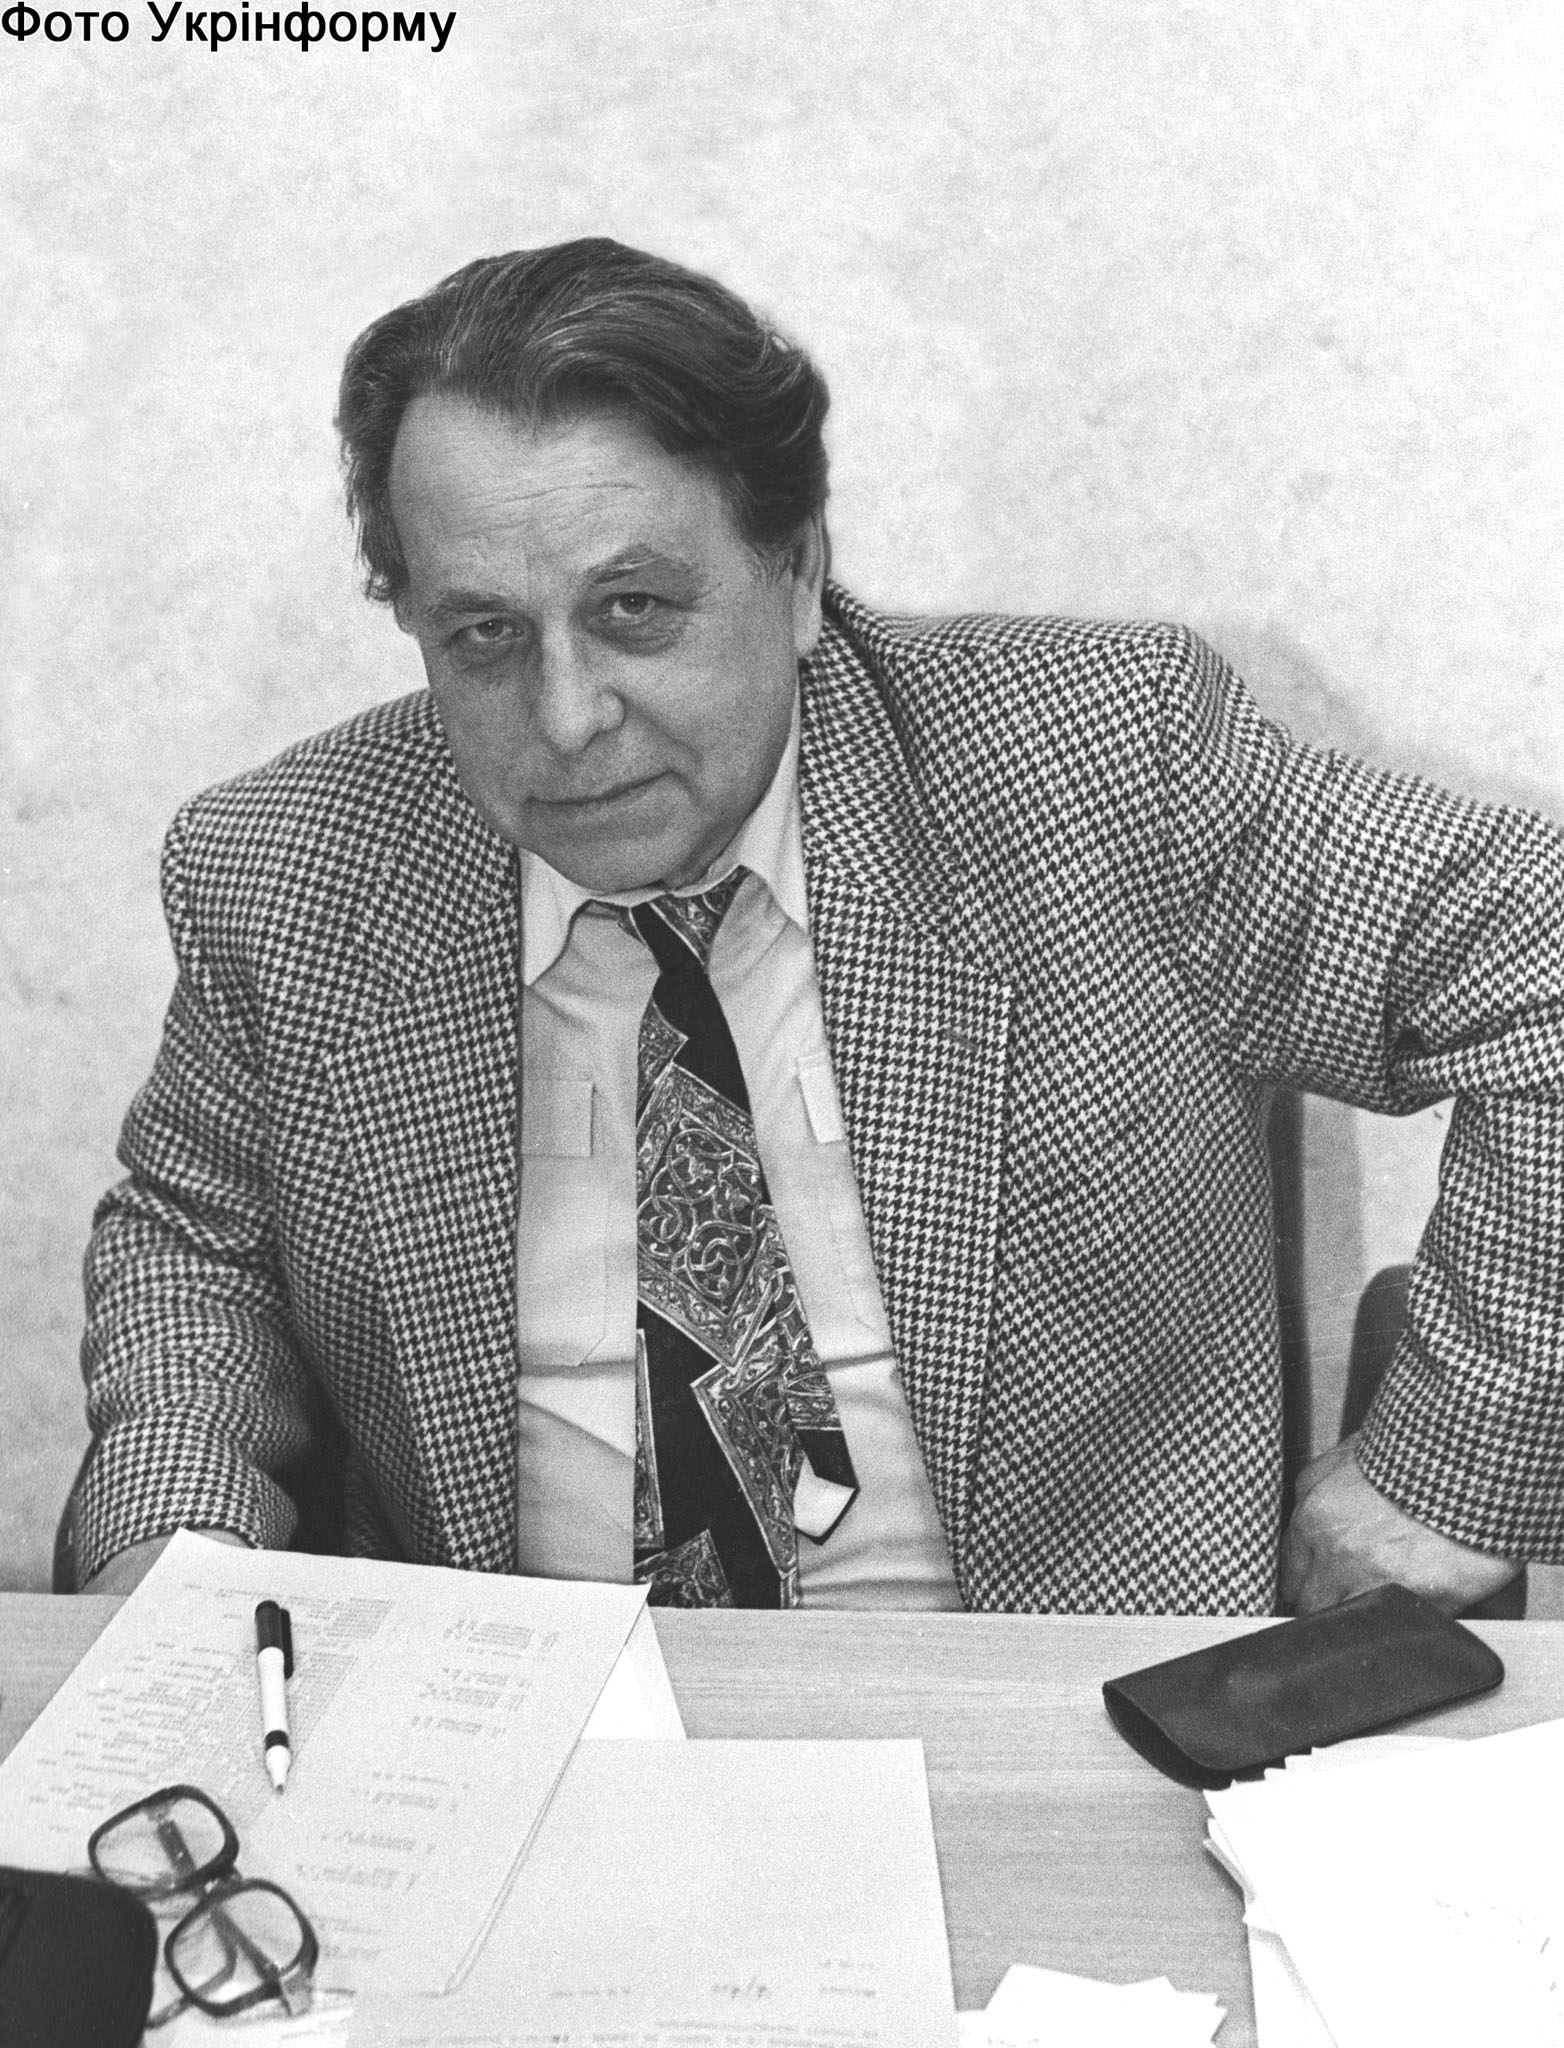 Анатолія Москаленка вважають засновником сучасної української журналістики